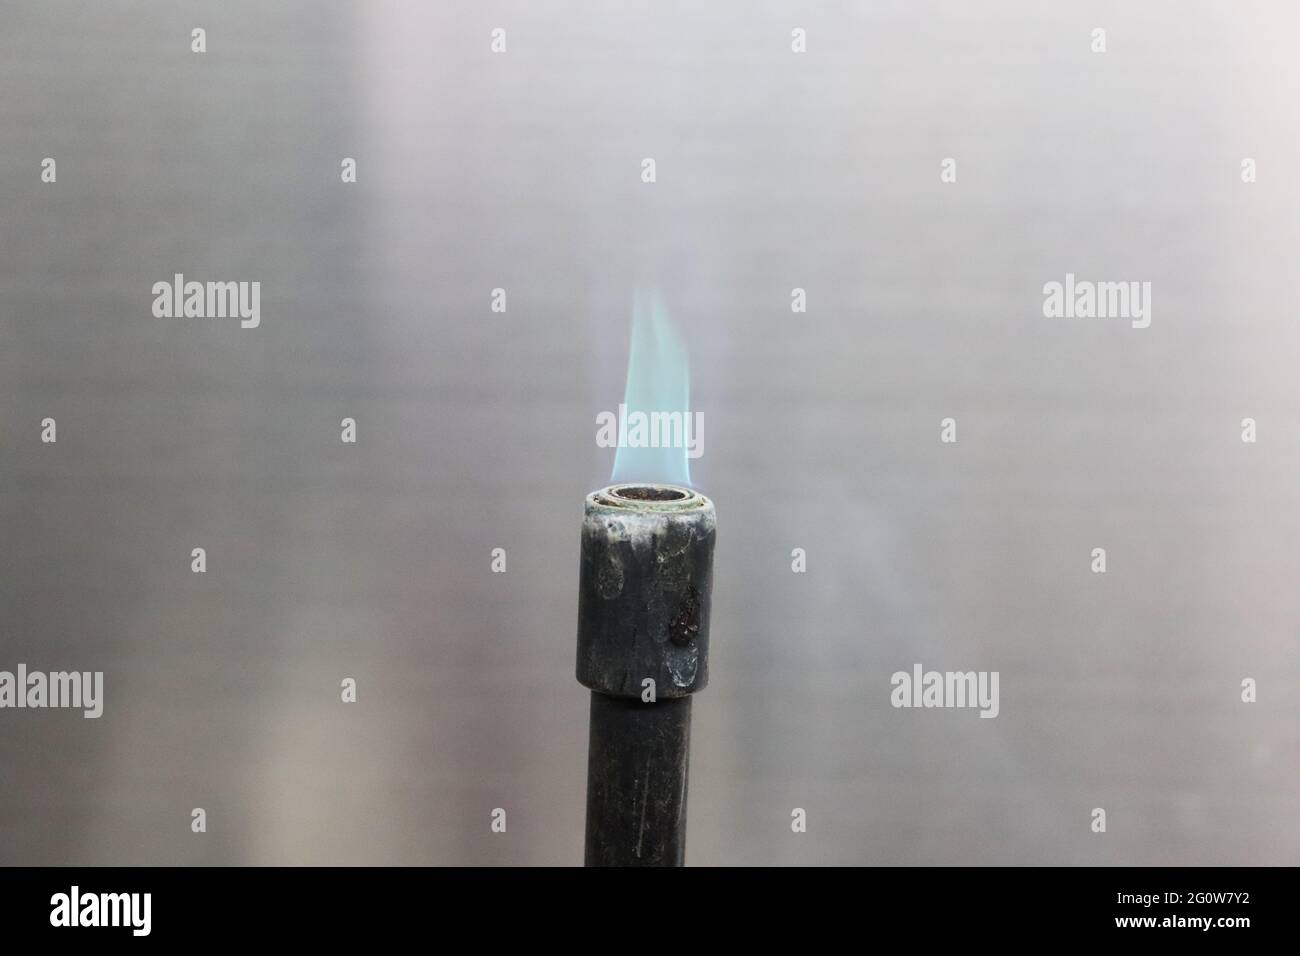 Ein Bunsenbrenner, benannt nach Robert Bunsen, ist eine Art Gasbrenner, der als Laborausrüstung verwendet wird und eine einzige offene Gasflamme erzeugt Stockfoto